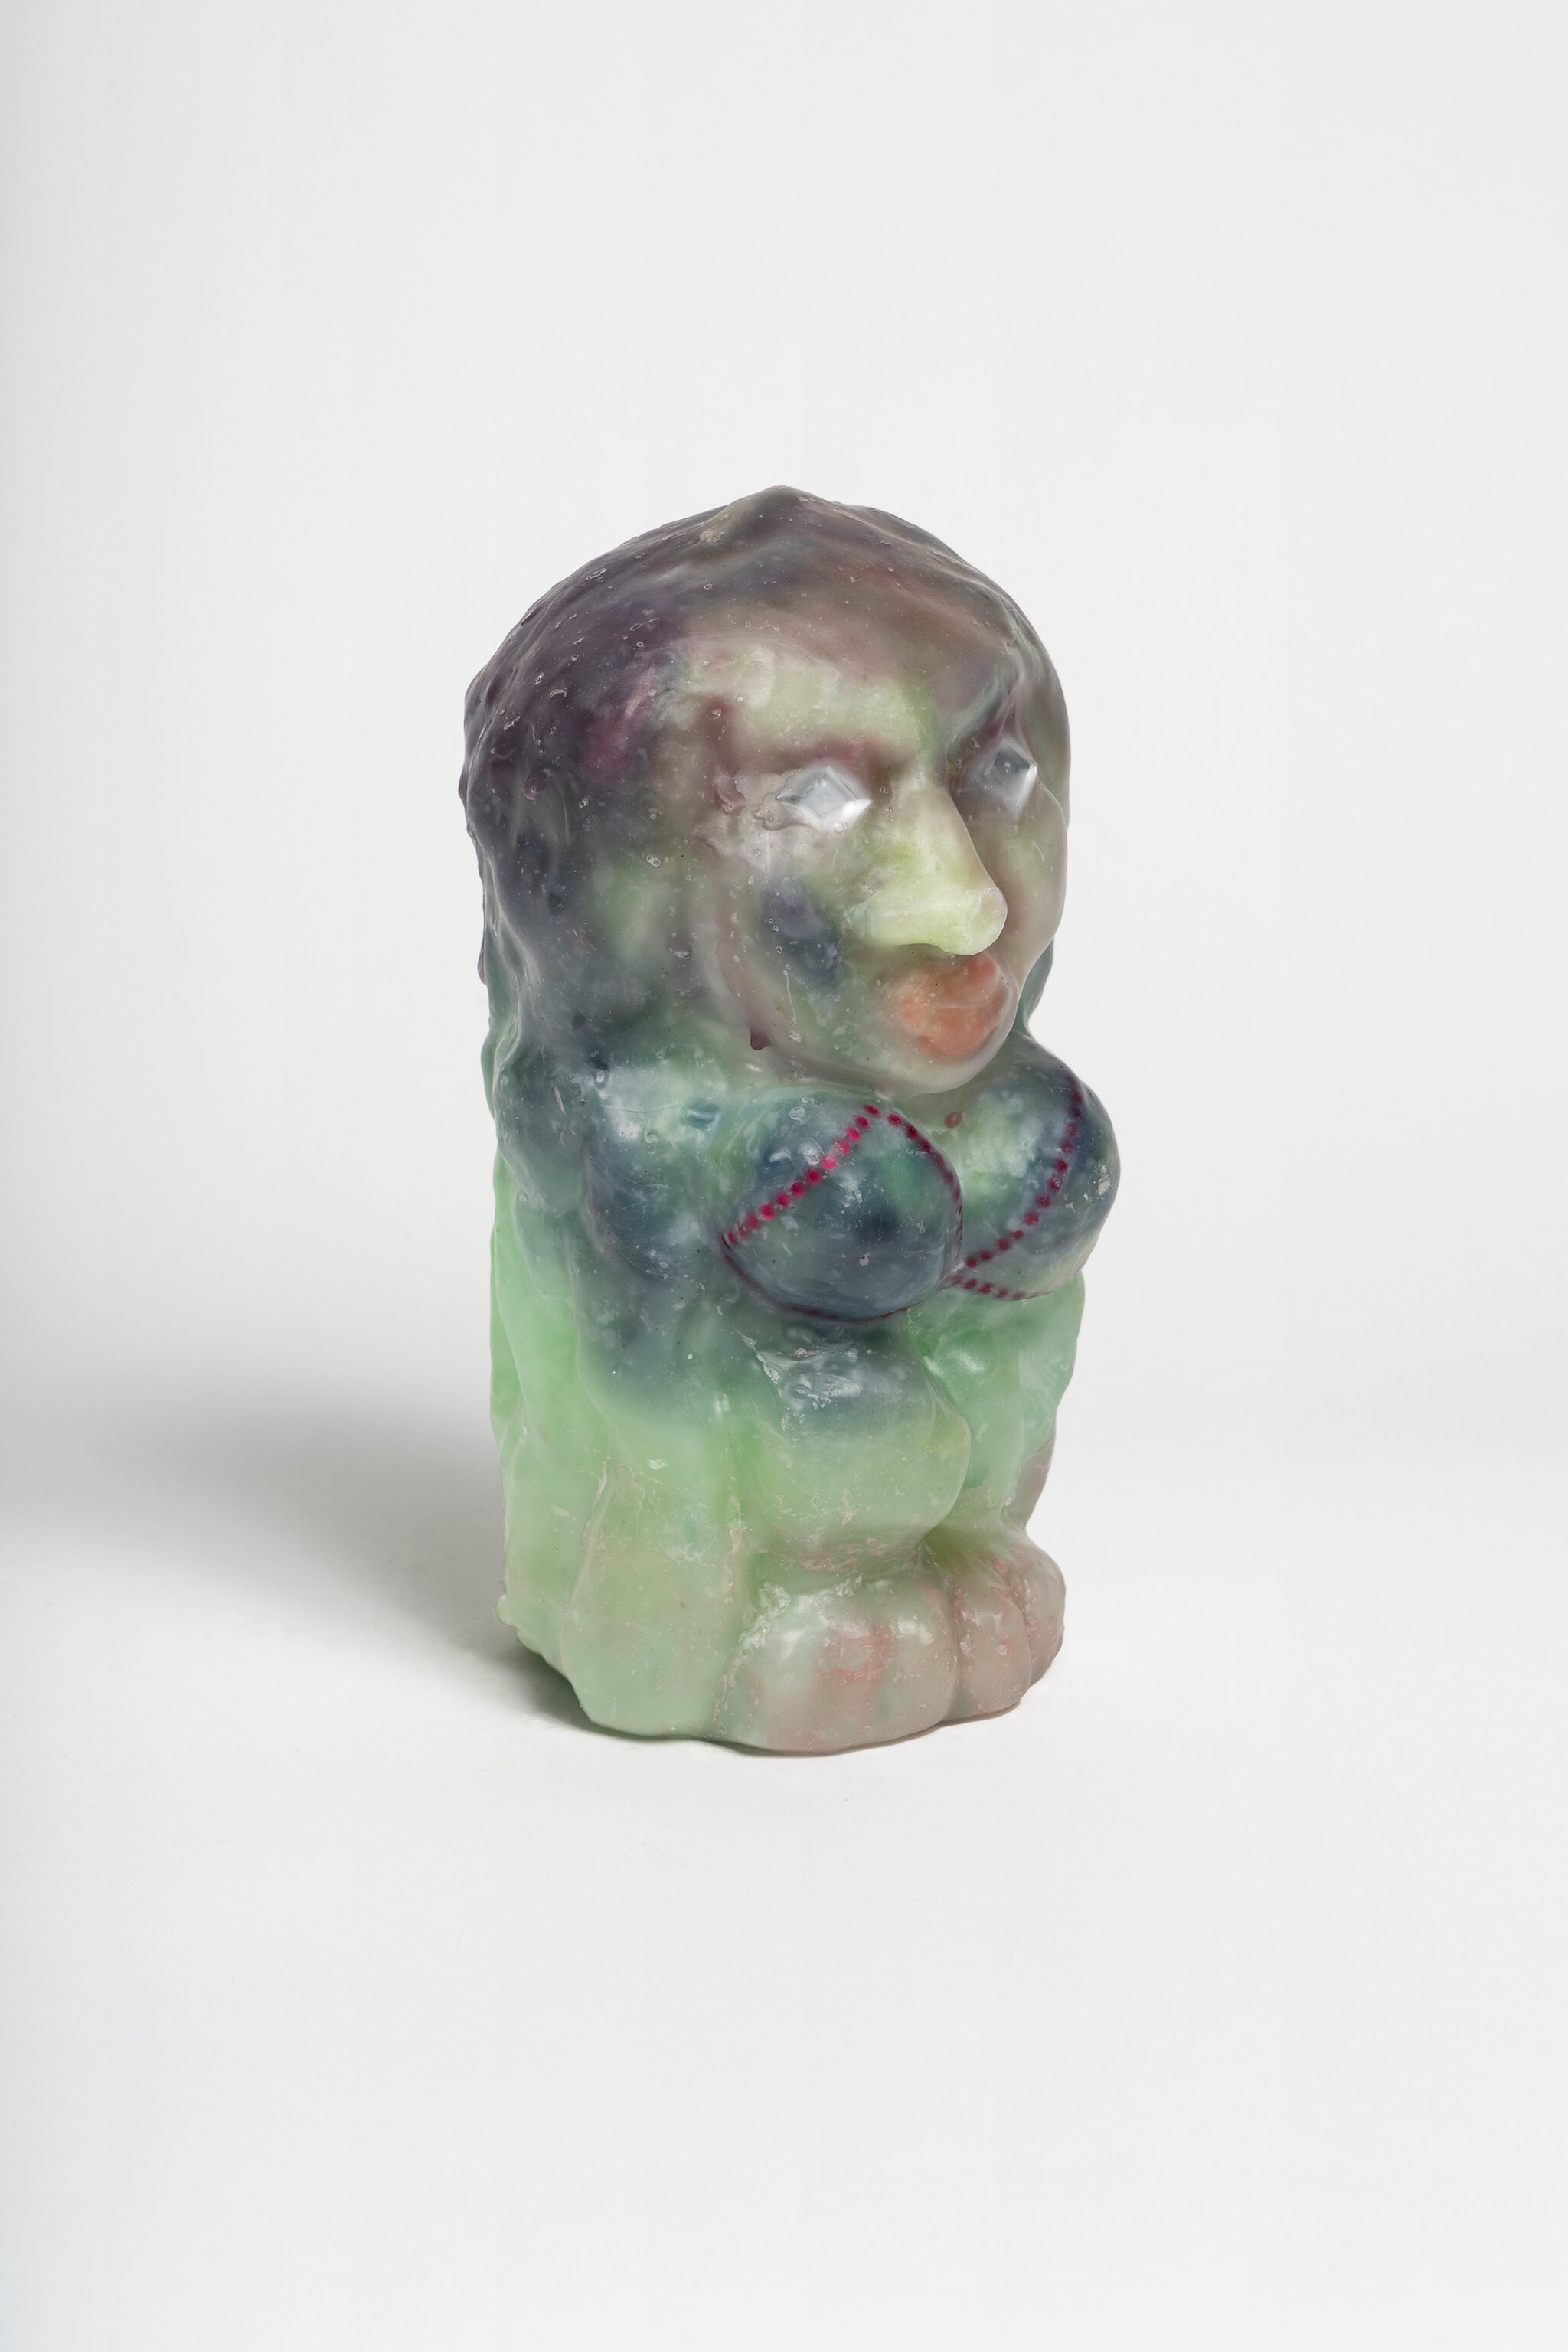 Goddess/Goblin wax sculpture, 300 EUR